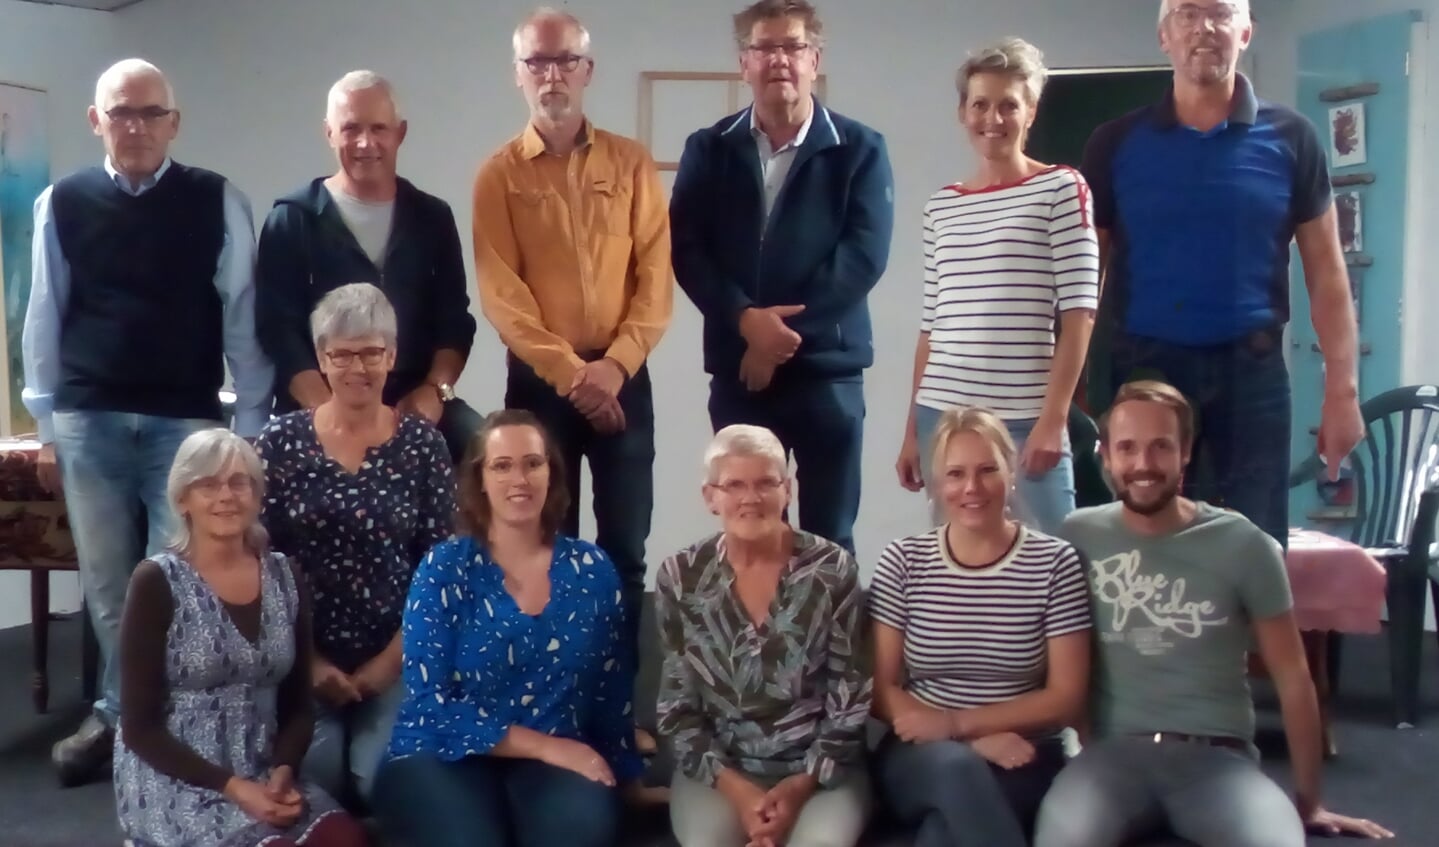 De toneelgroep Linde onder leiding van regisseur Henk Broekgaarden (staande tweede van links). Foto: PR